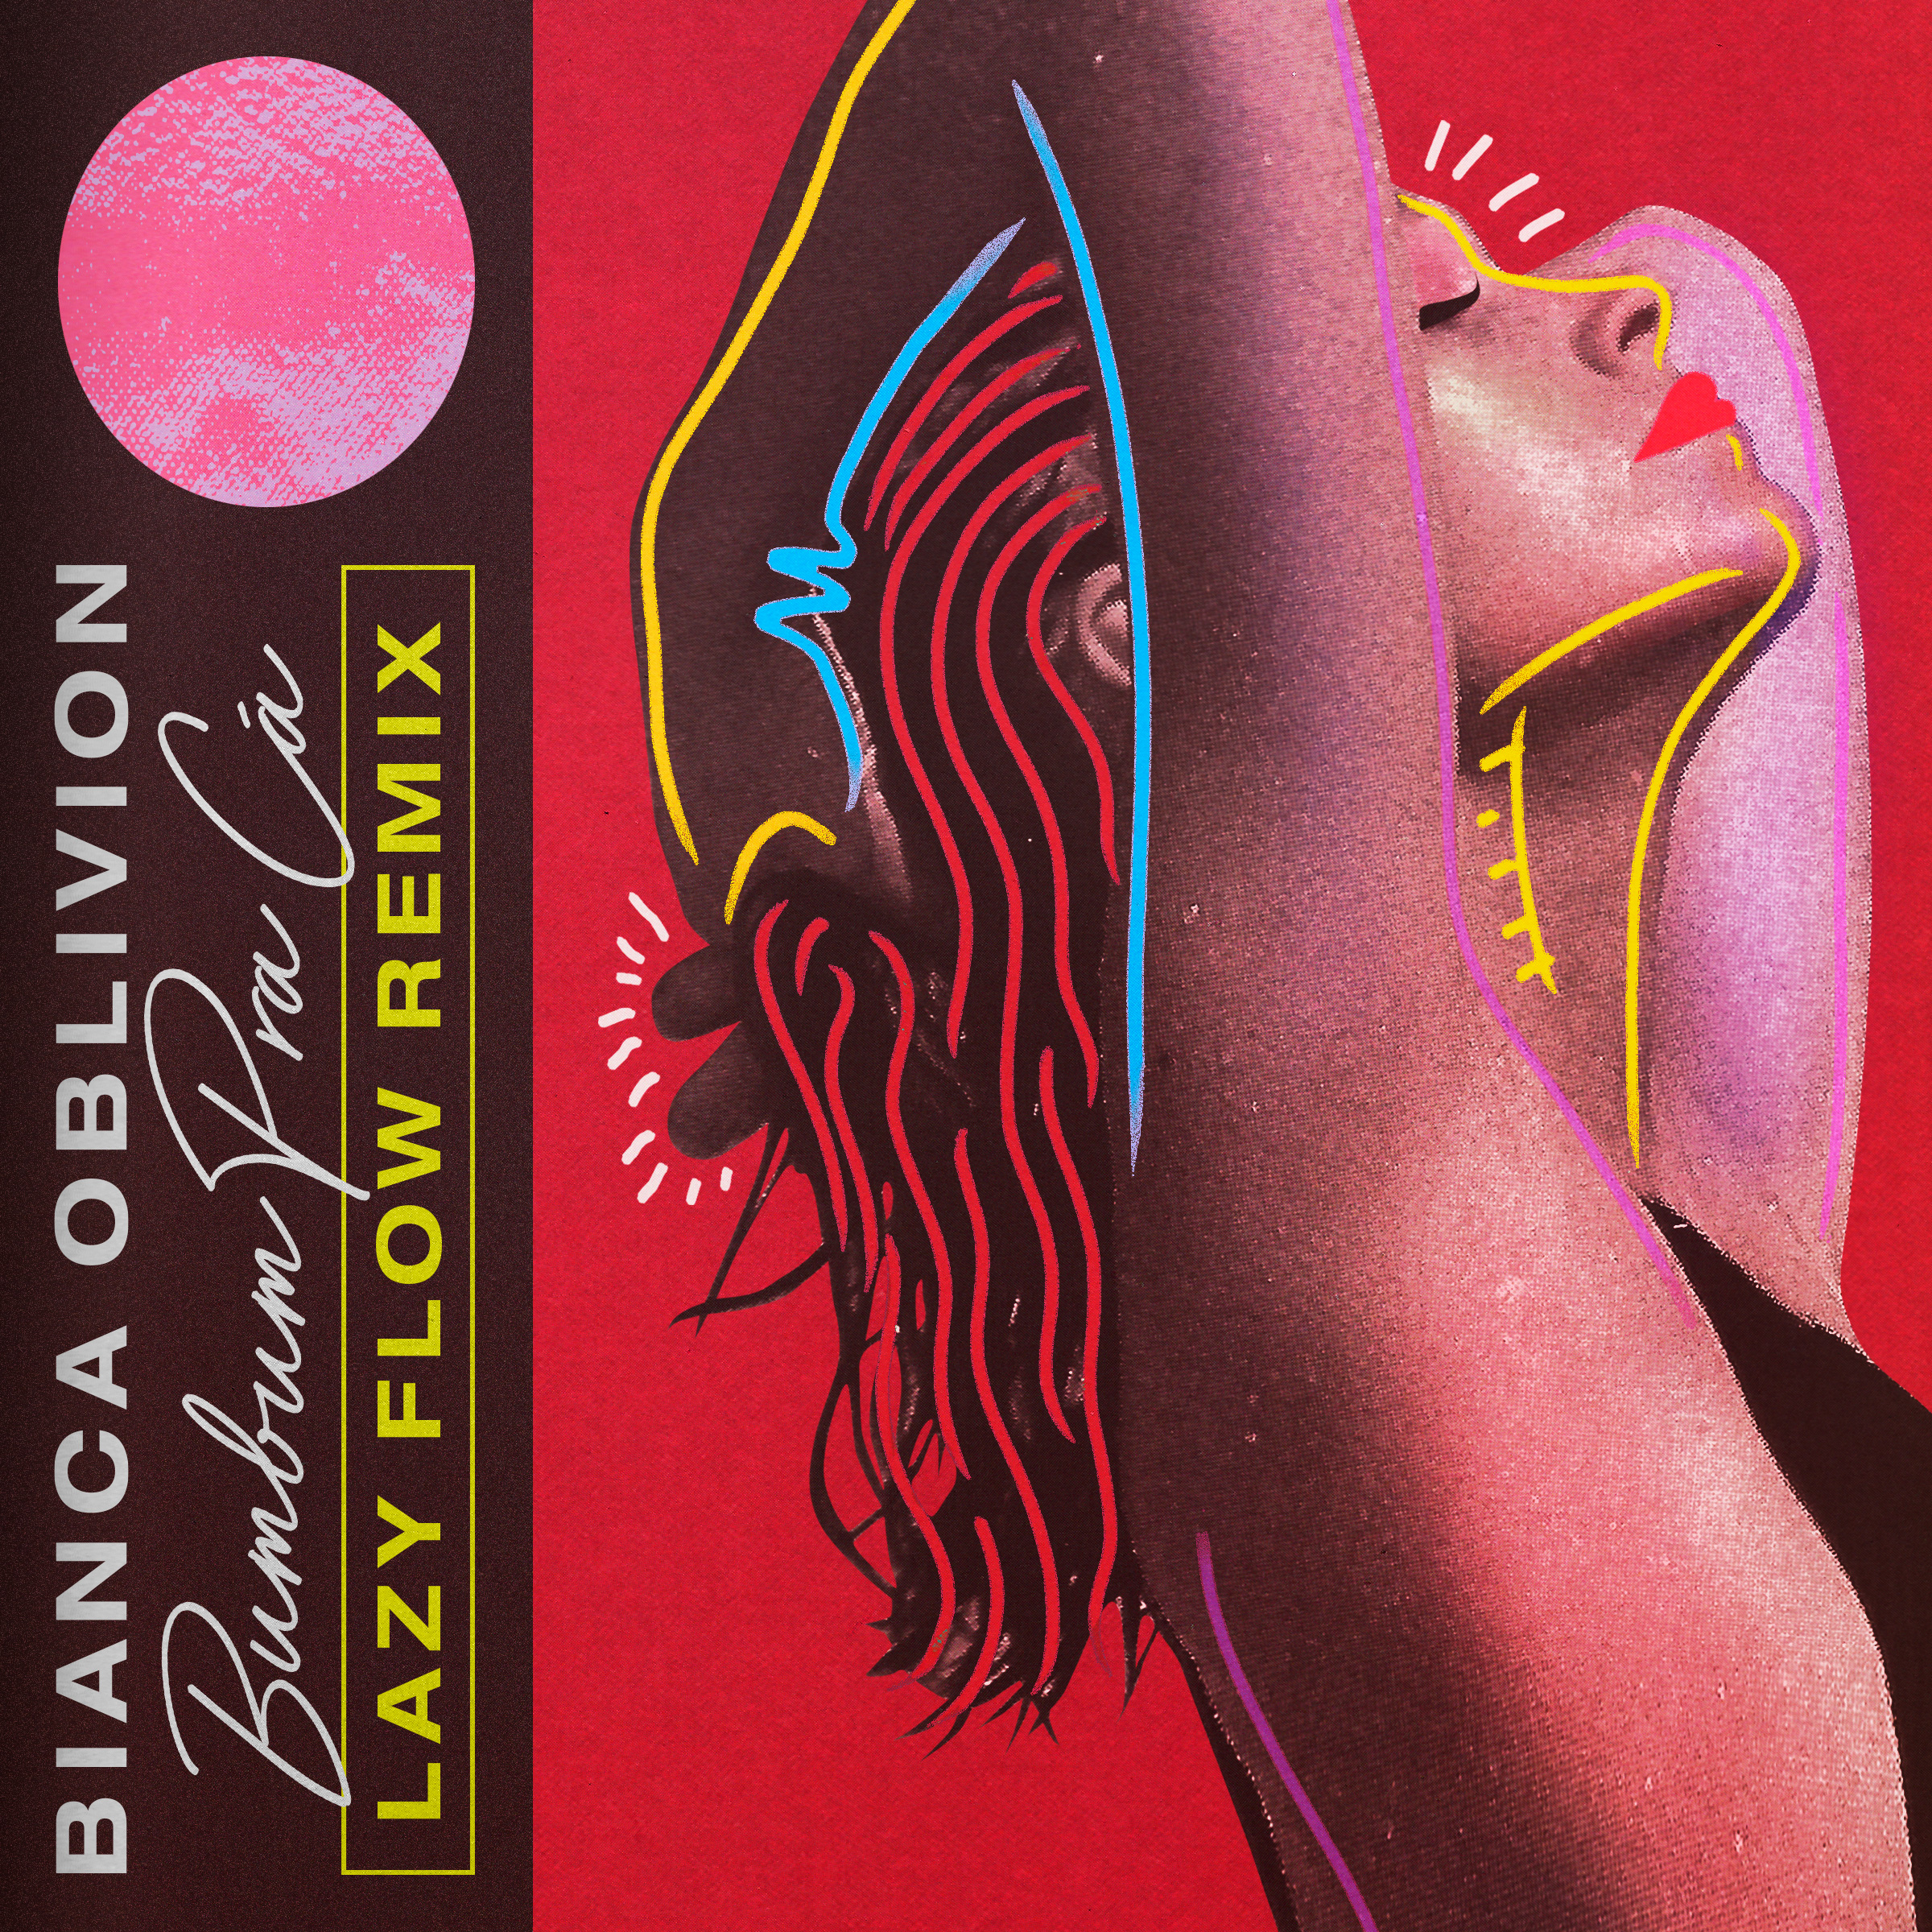 Download [PREMIERE] Bianca Oblivion - Bumbum Pra Cá (Lazy Flow remix)